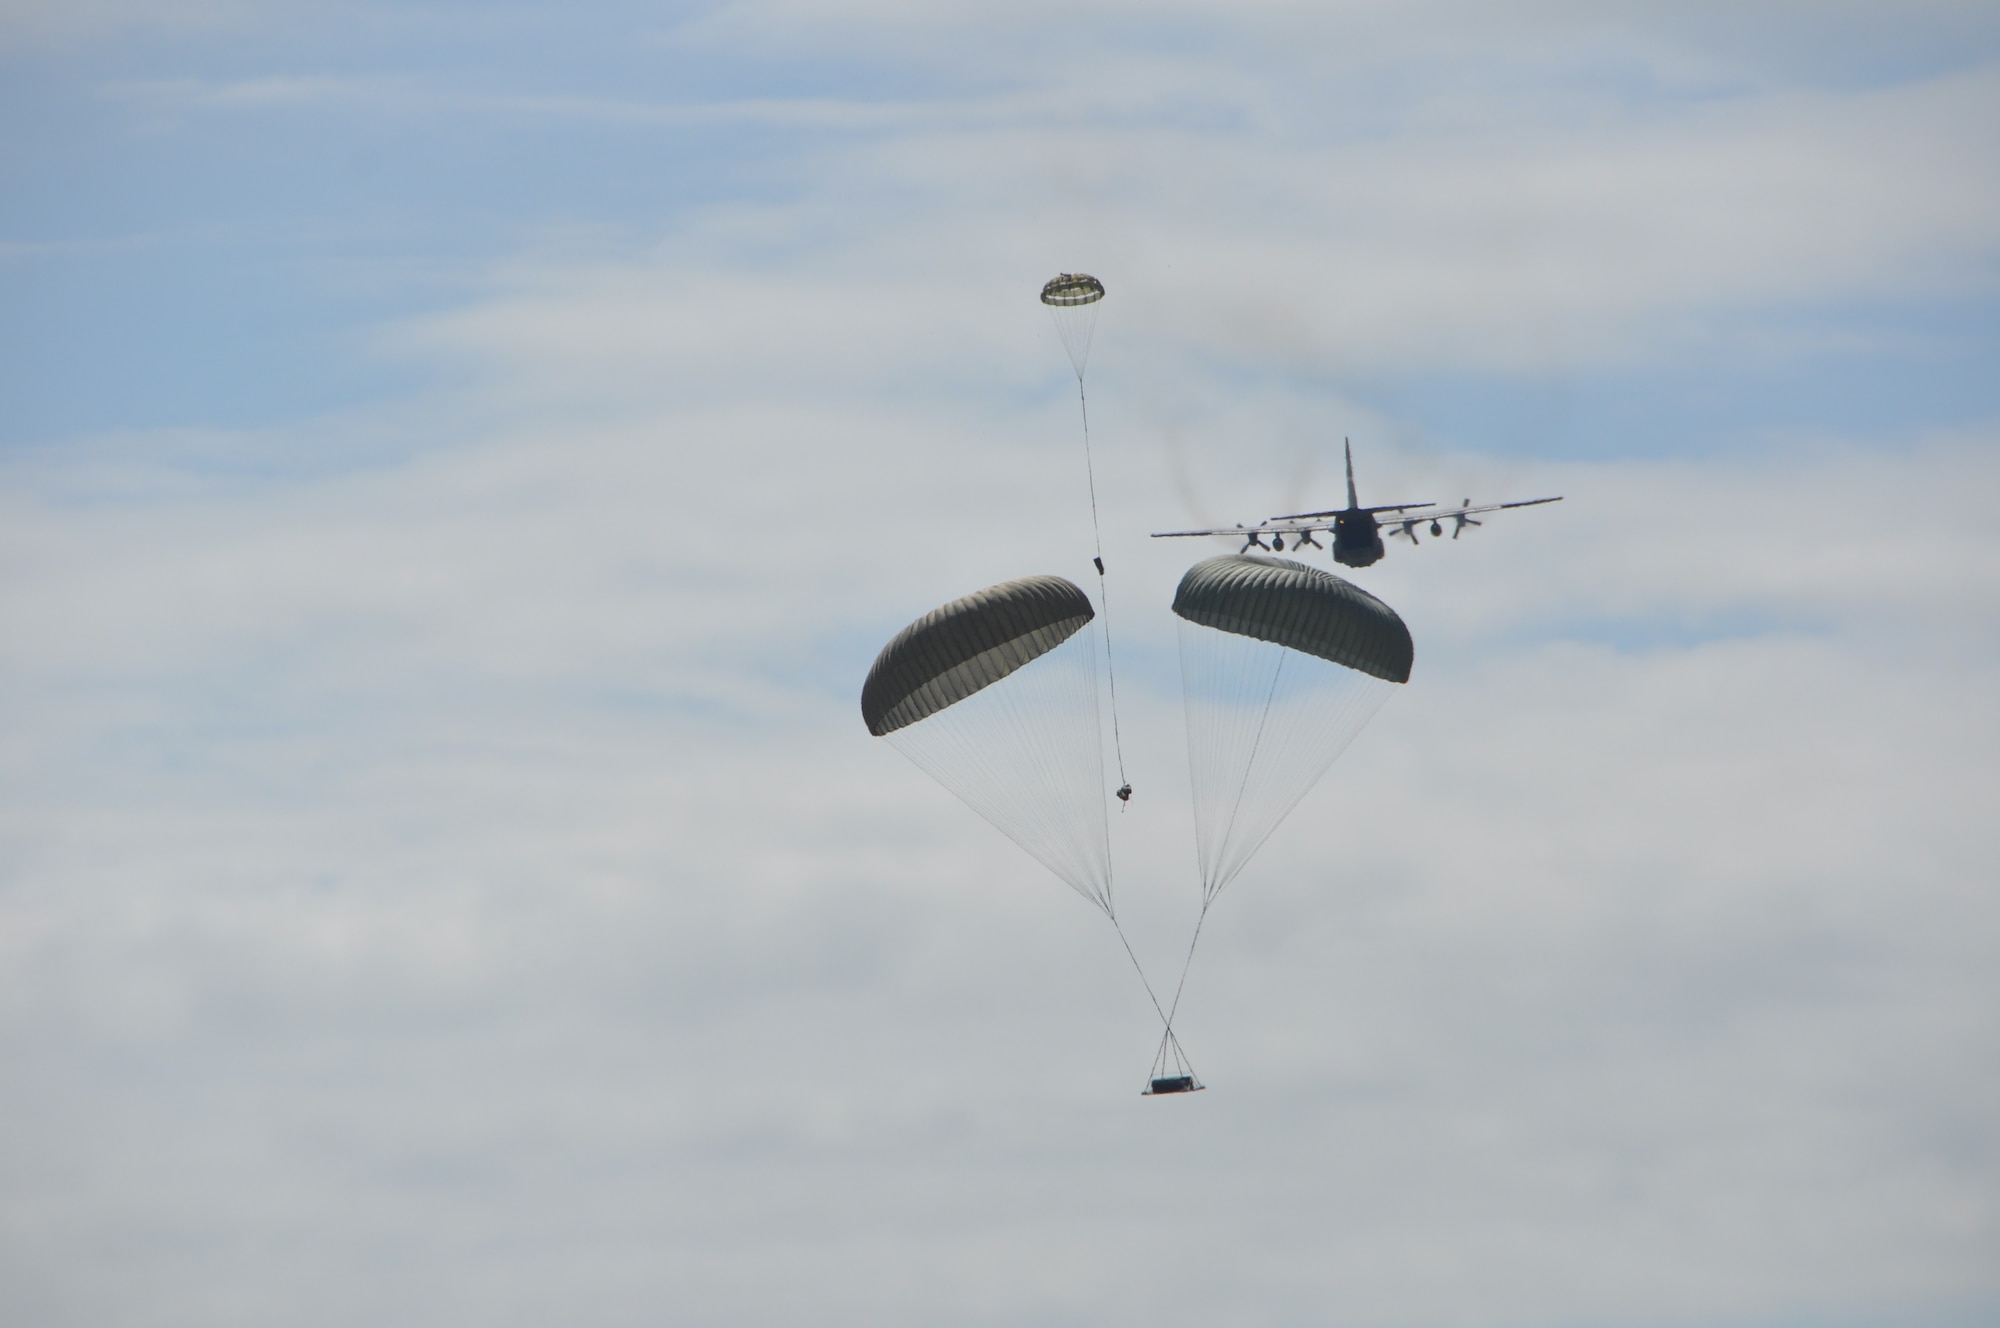 A parachute open for a cargo air drop